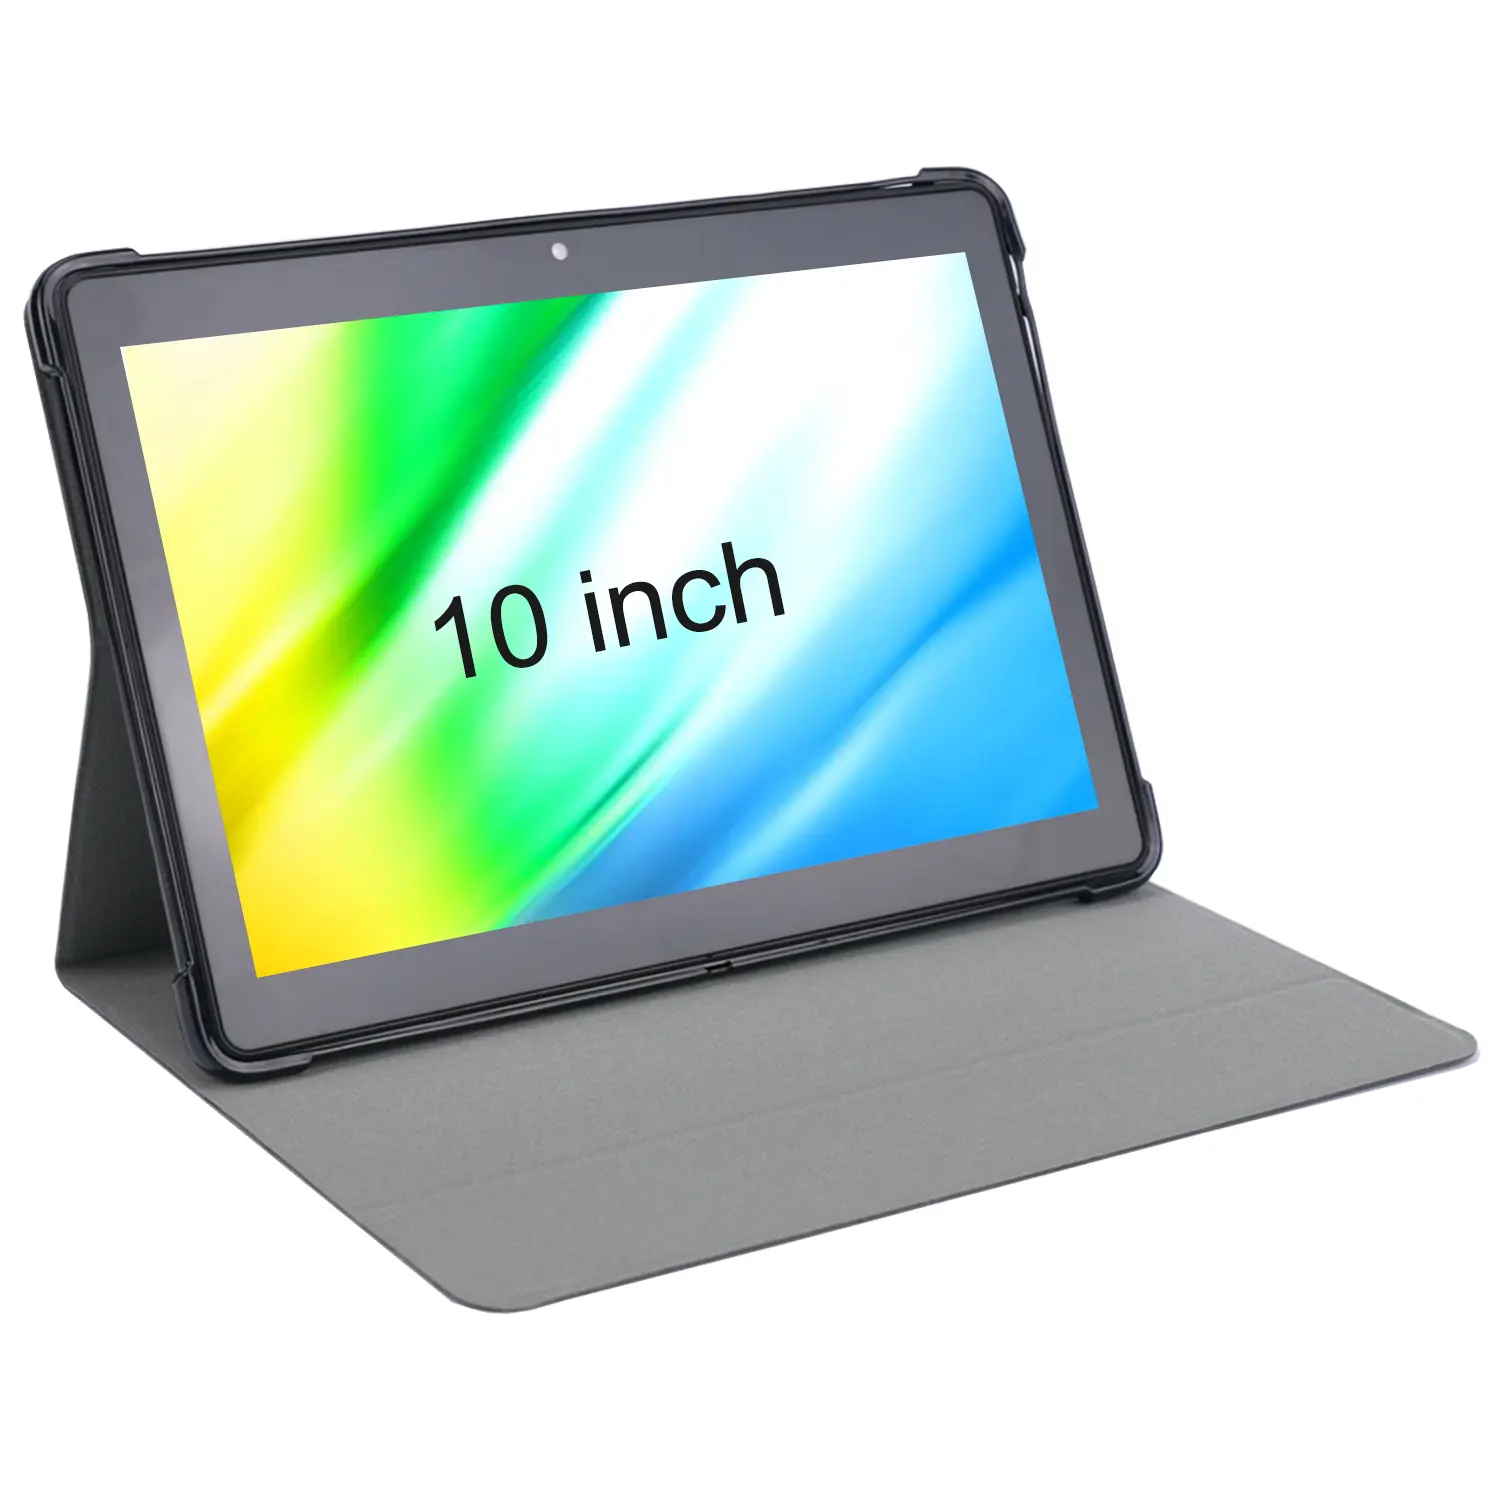 Veidoo 10 inç Ultra ince koruyucu Tablet kapak kılıf ile uyumlu 10.1 ''Tablet Pc katlanabilir ve katı standı akıllı kılıfları